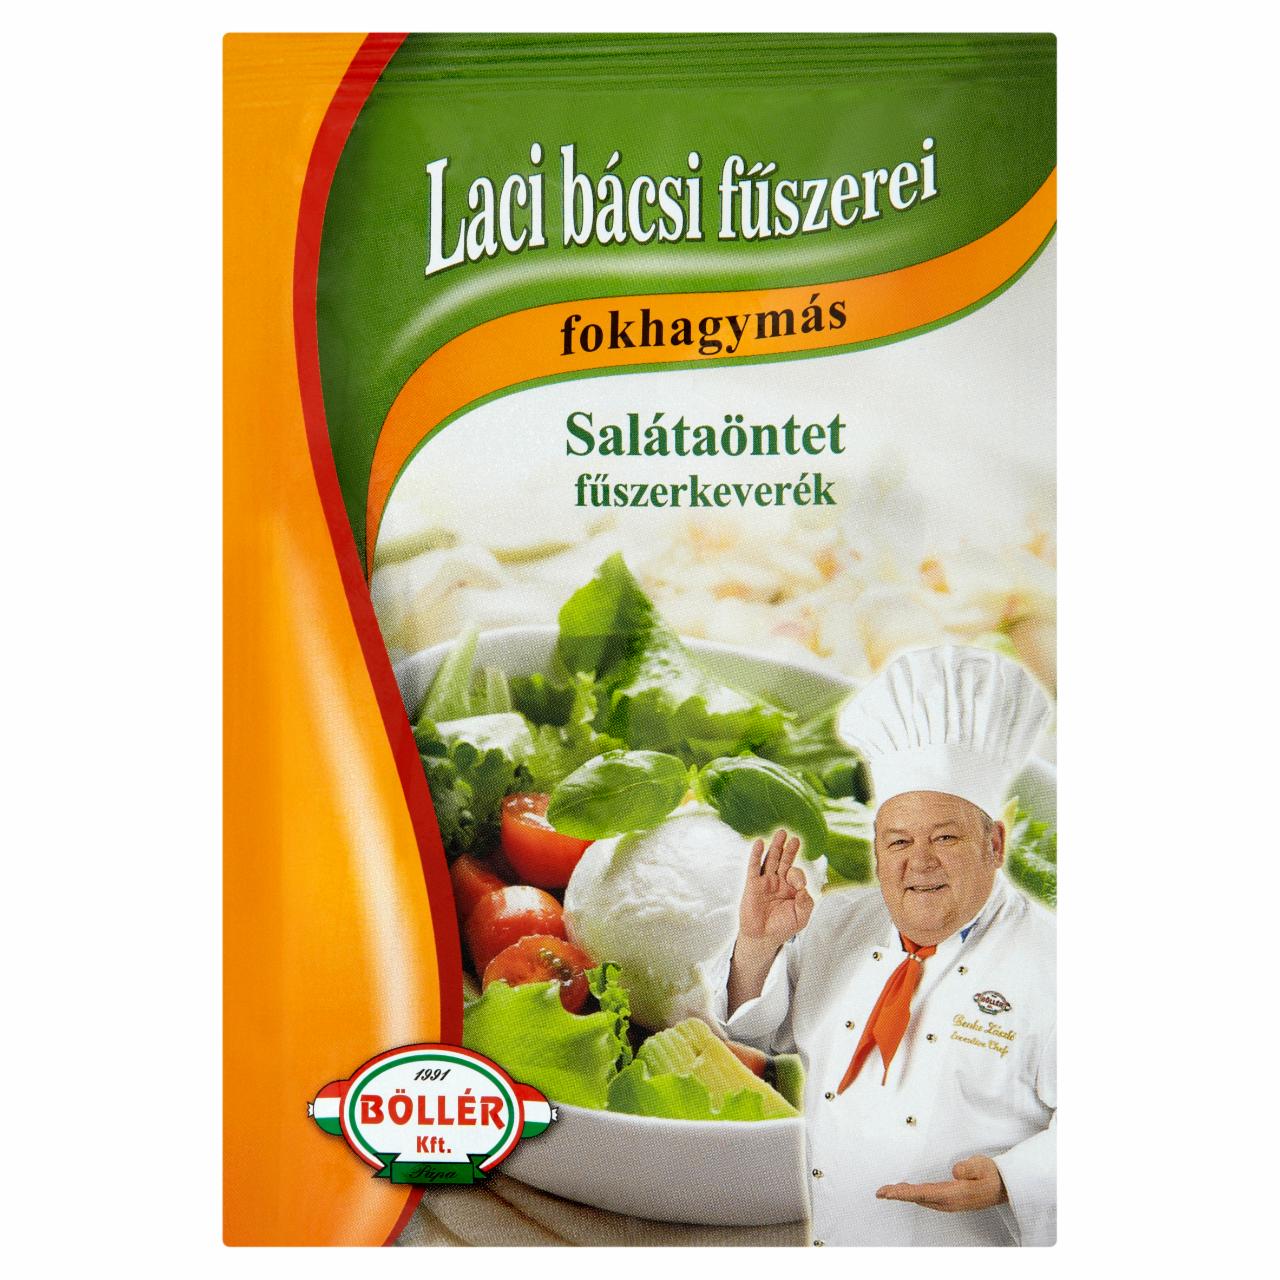 Képek - Böllér Laci Bácsi Fűszerei fokhagymás salátaöntet fűszerkeverék 20 g